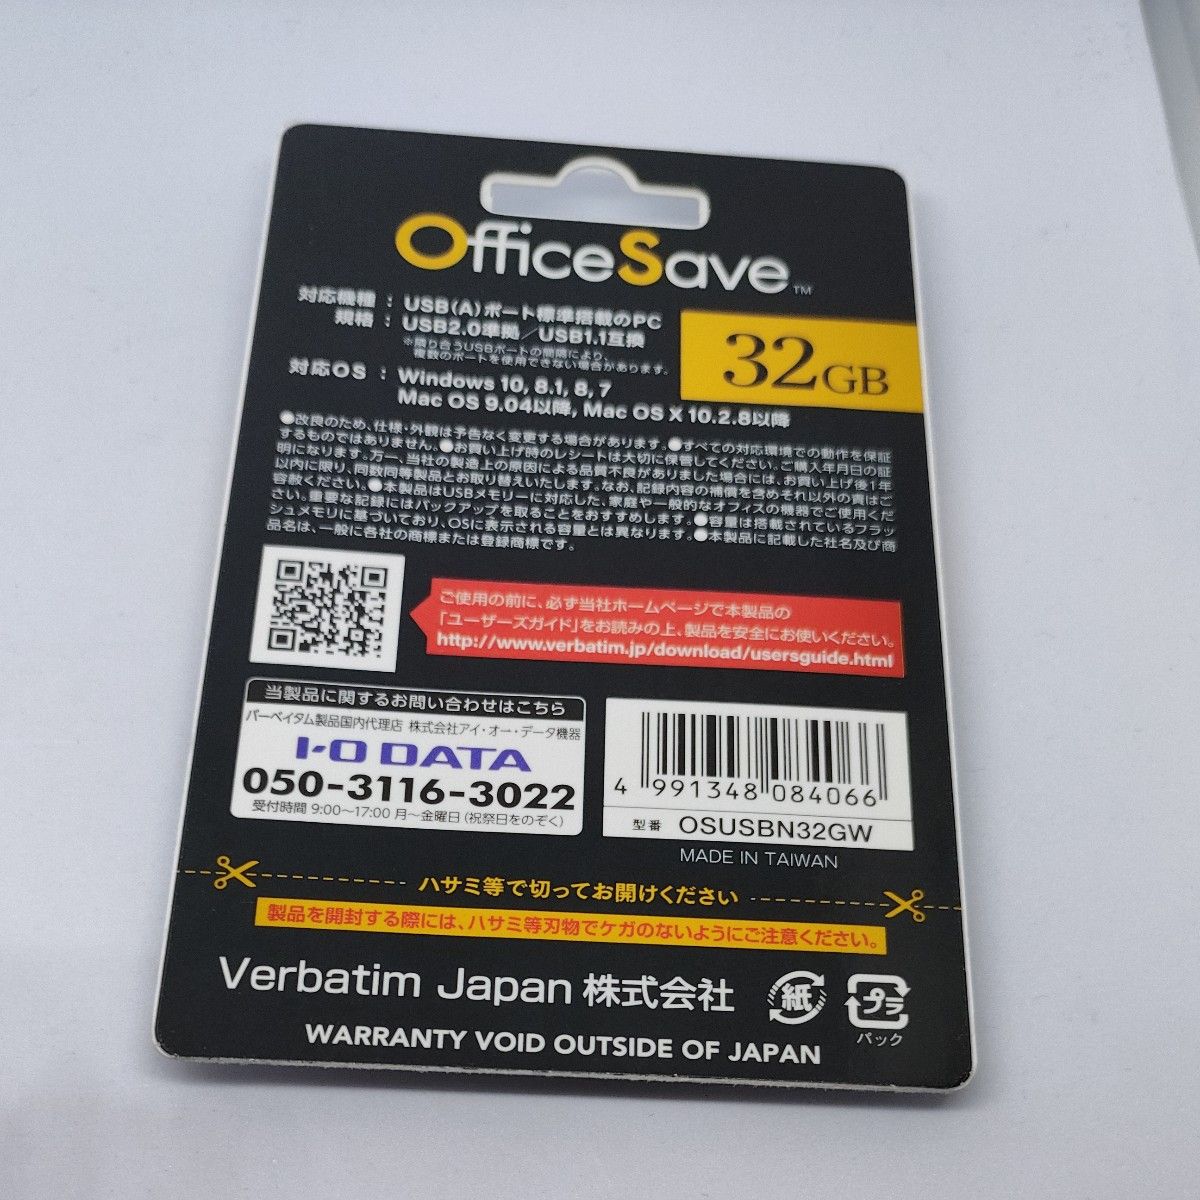 Office Save OSUSBN32GW USBメモリ 32GB ホワイト